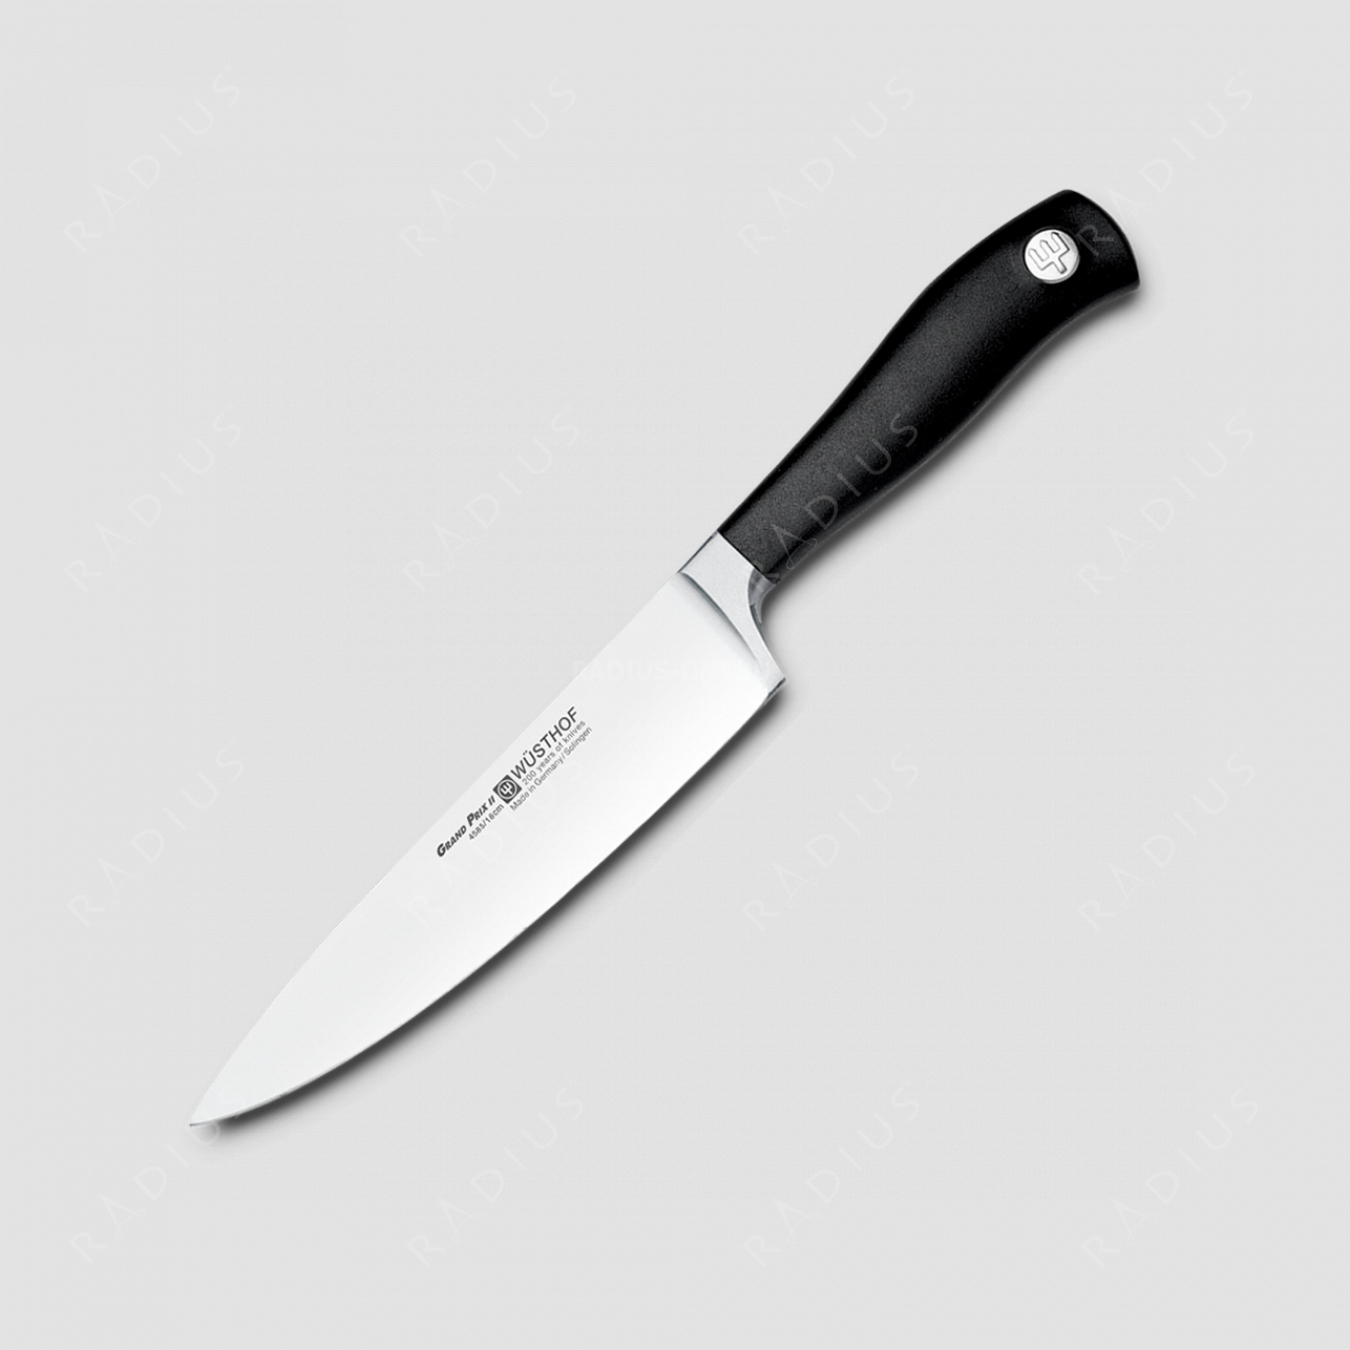 Профессиональный поварской кухонный нож 18 см, серия Grand Prix II, WUESTHOF, Золинген, Германия